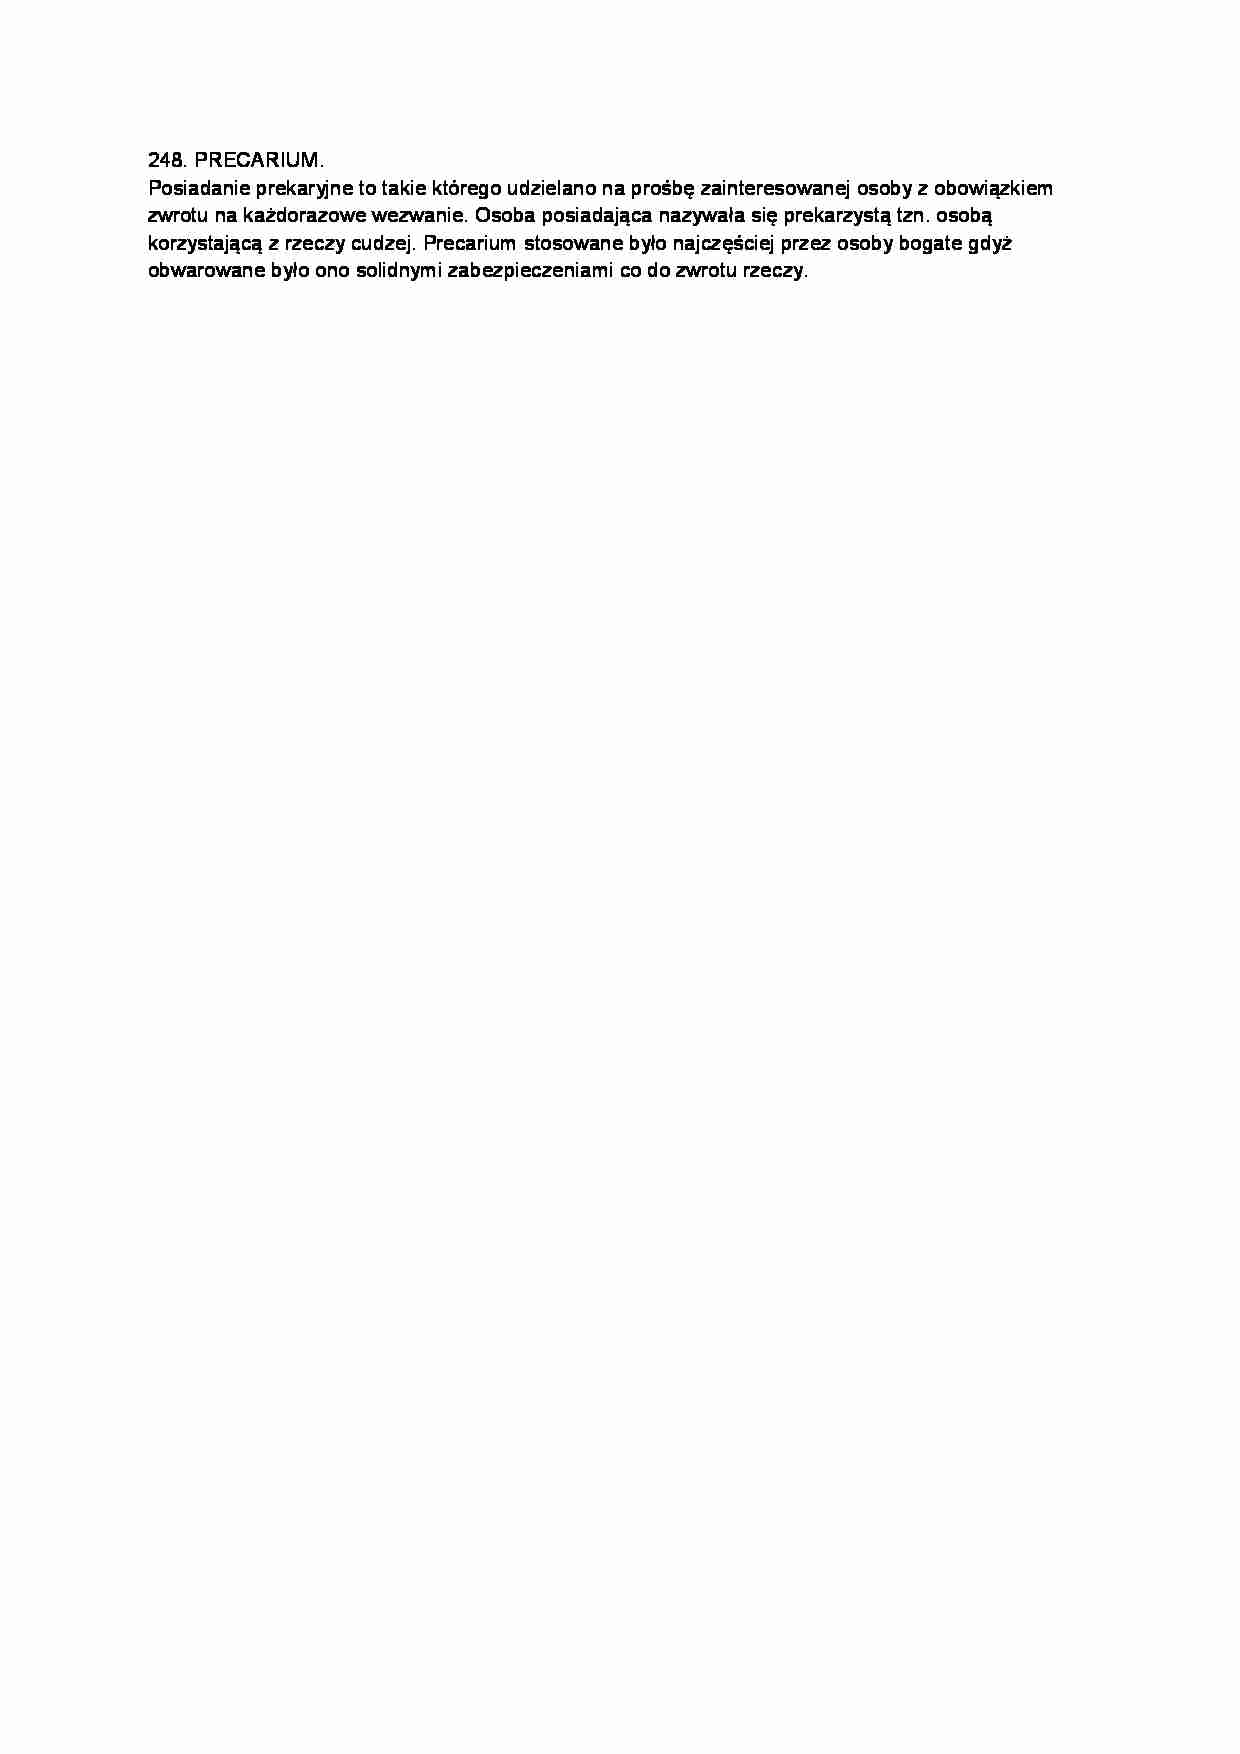 Precarium-opracowanie 1 - strona 1